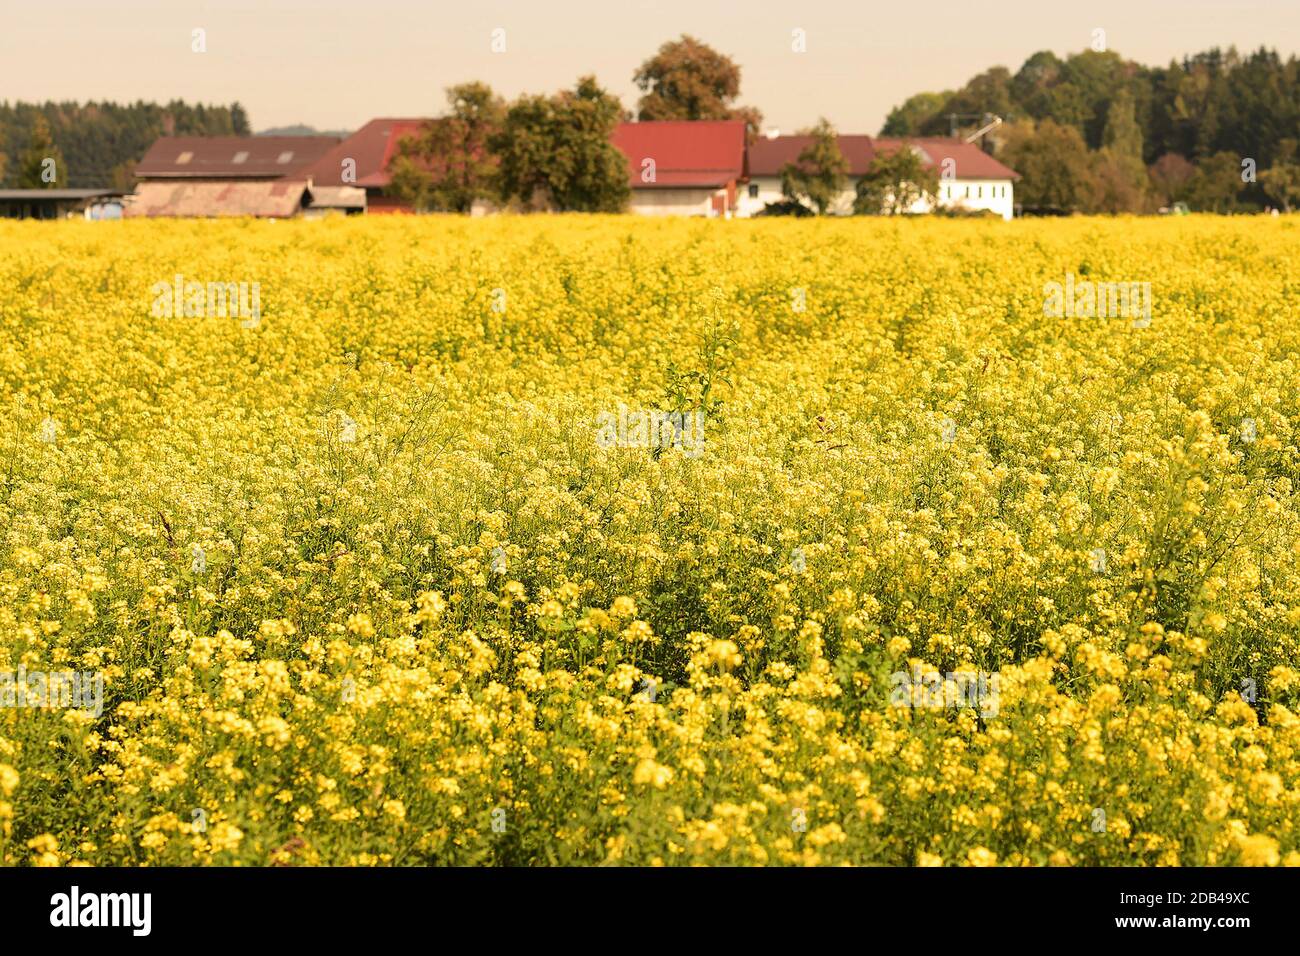 Ein Feld mit blühenden Senfpflanzen im Herbst im Salzkammergut - Senf ist ein scharfes gewürz, das aus den Samenkörnern des Weißen, Braunen und des SC Foto Stock